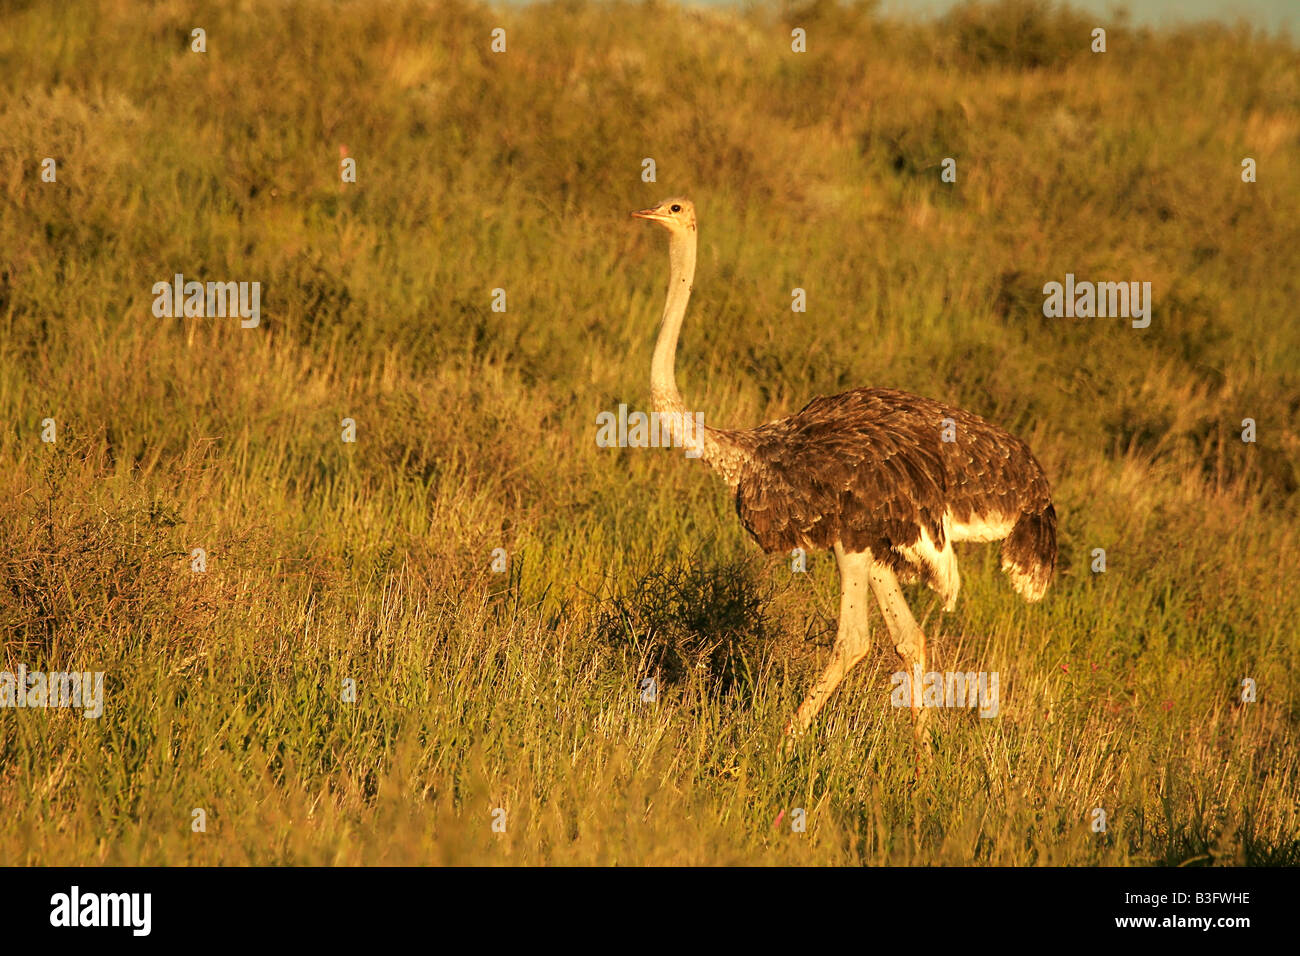 afrikanischer strauss ostrich south africa suedafrika Stock Photo